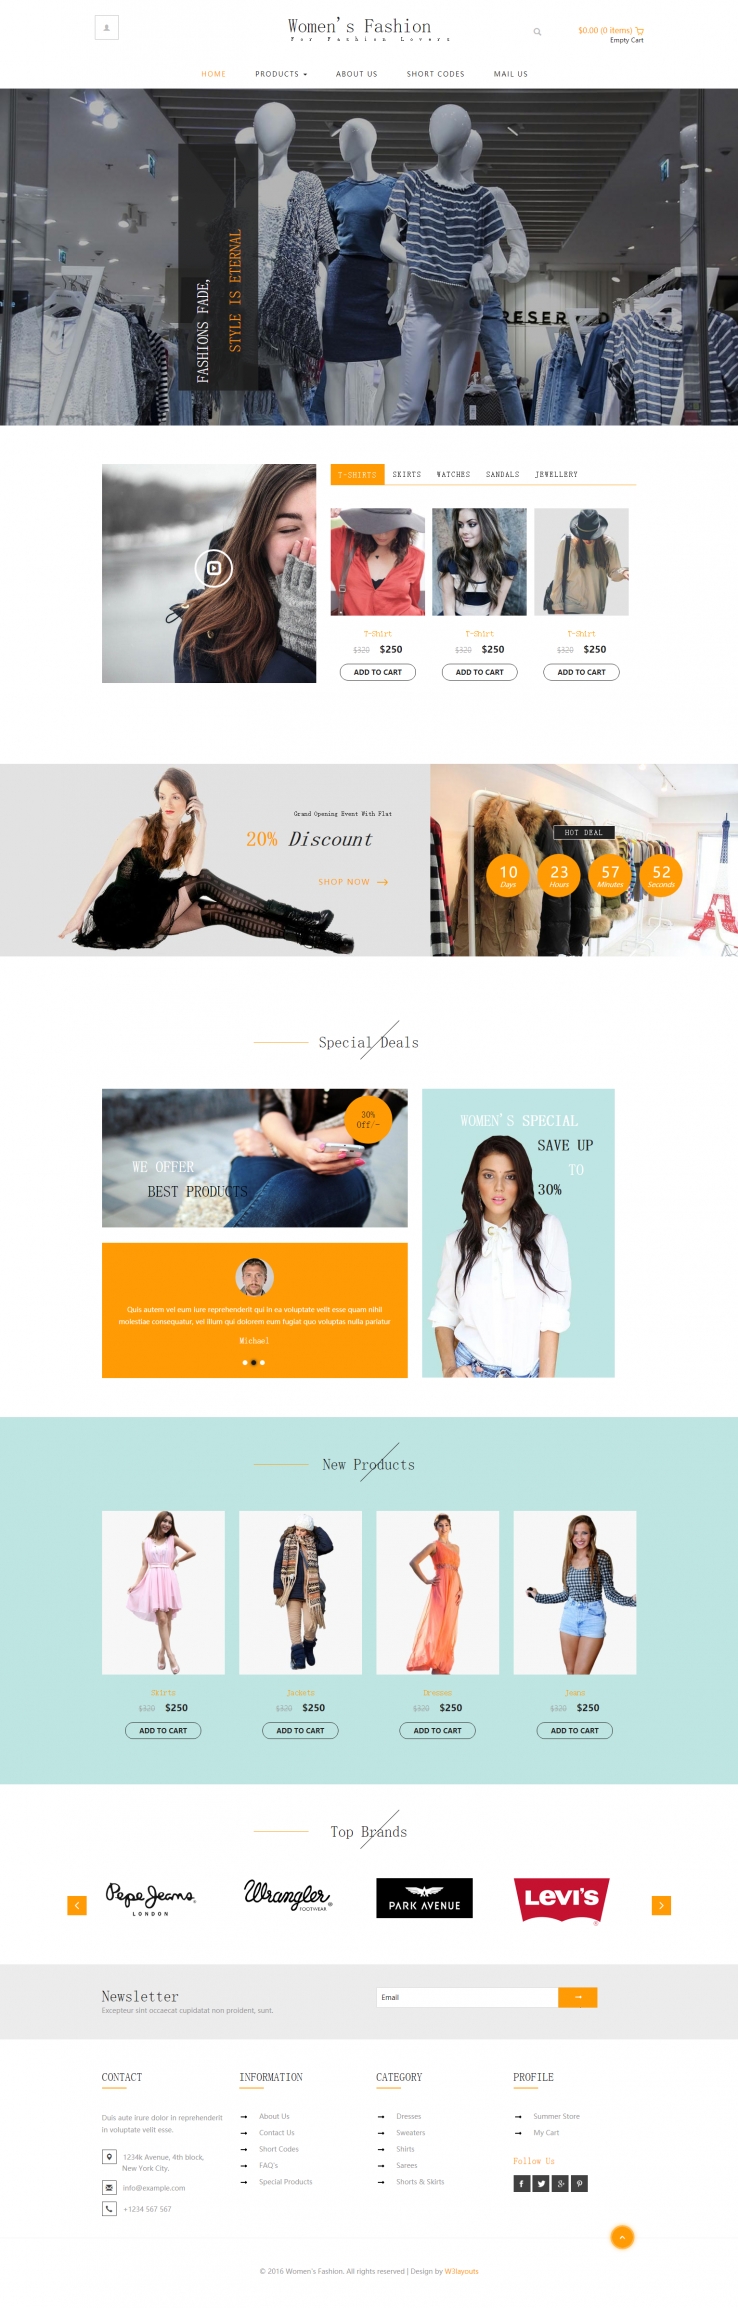 橙色简洁风格的女性产品商城整站网站源码下载